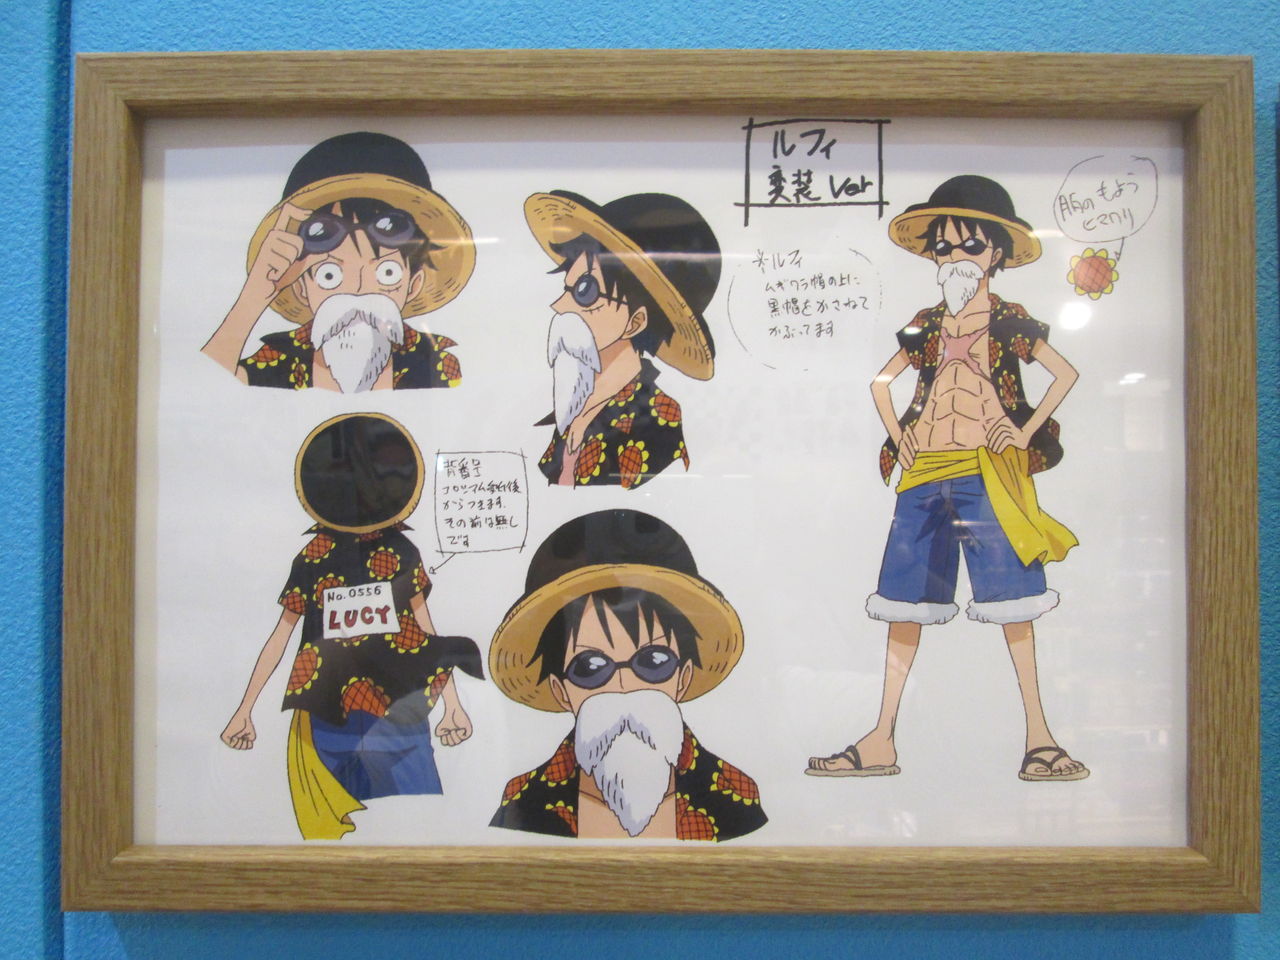 14年04月 One Piece 麦わらストア 航海日誌